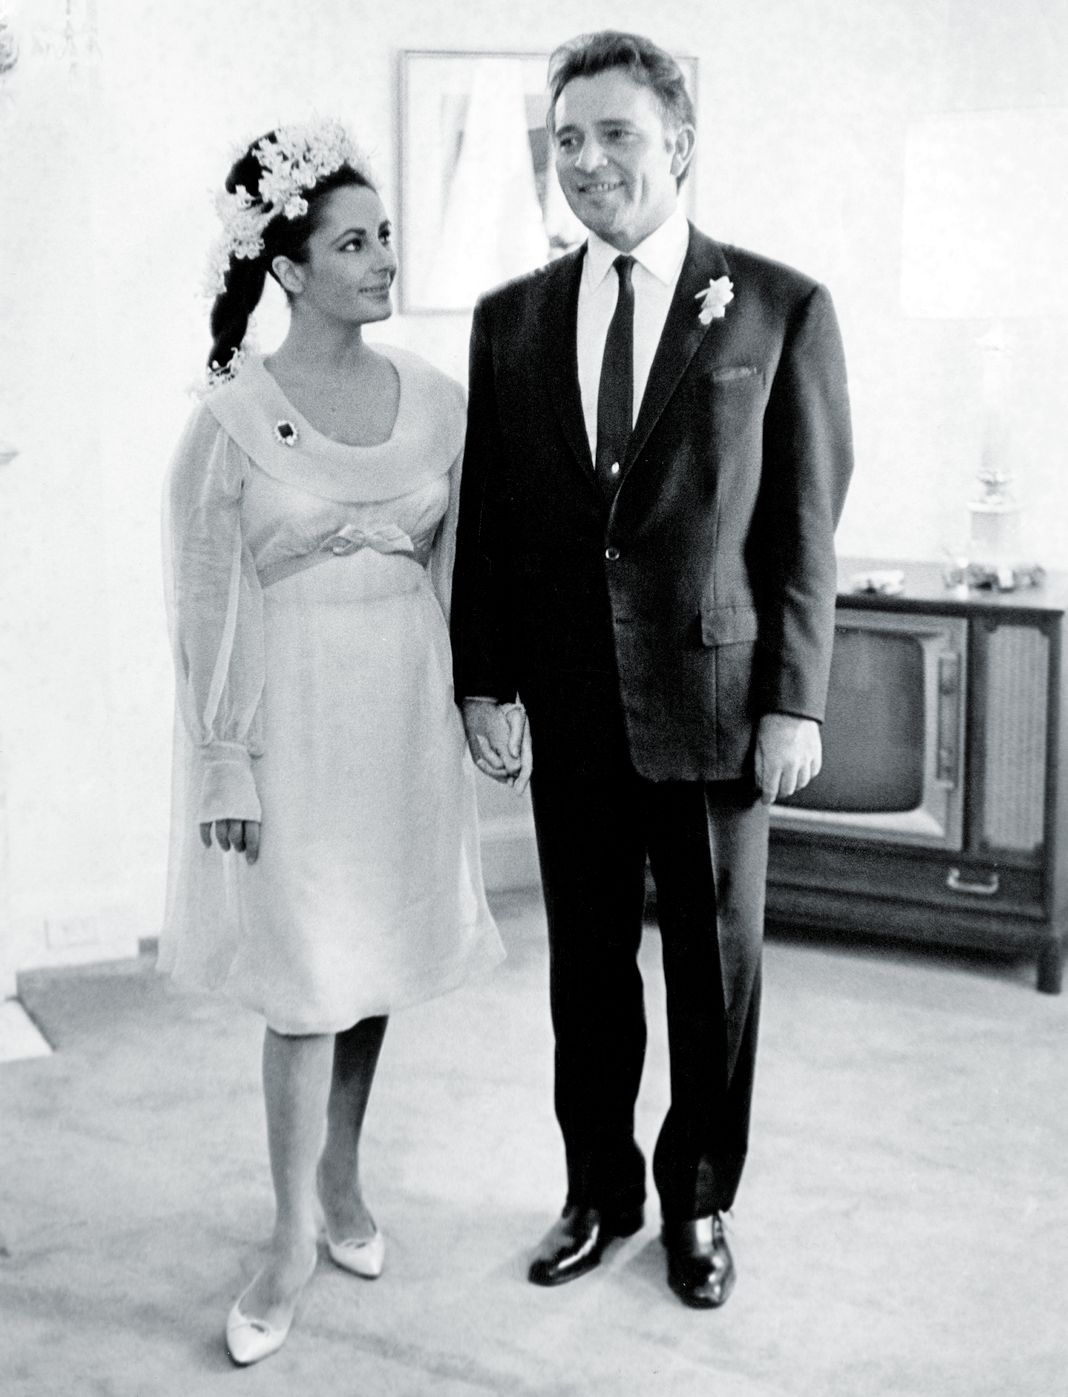 Звезды британского кино Элизабет Тейлор и Ричард Бертон на своей первой свадьбе в Монреале, Канада. Они женились дважды.